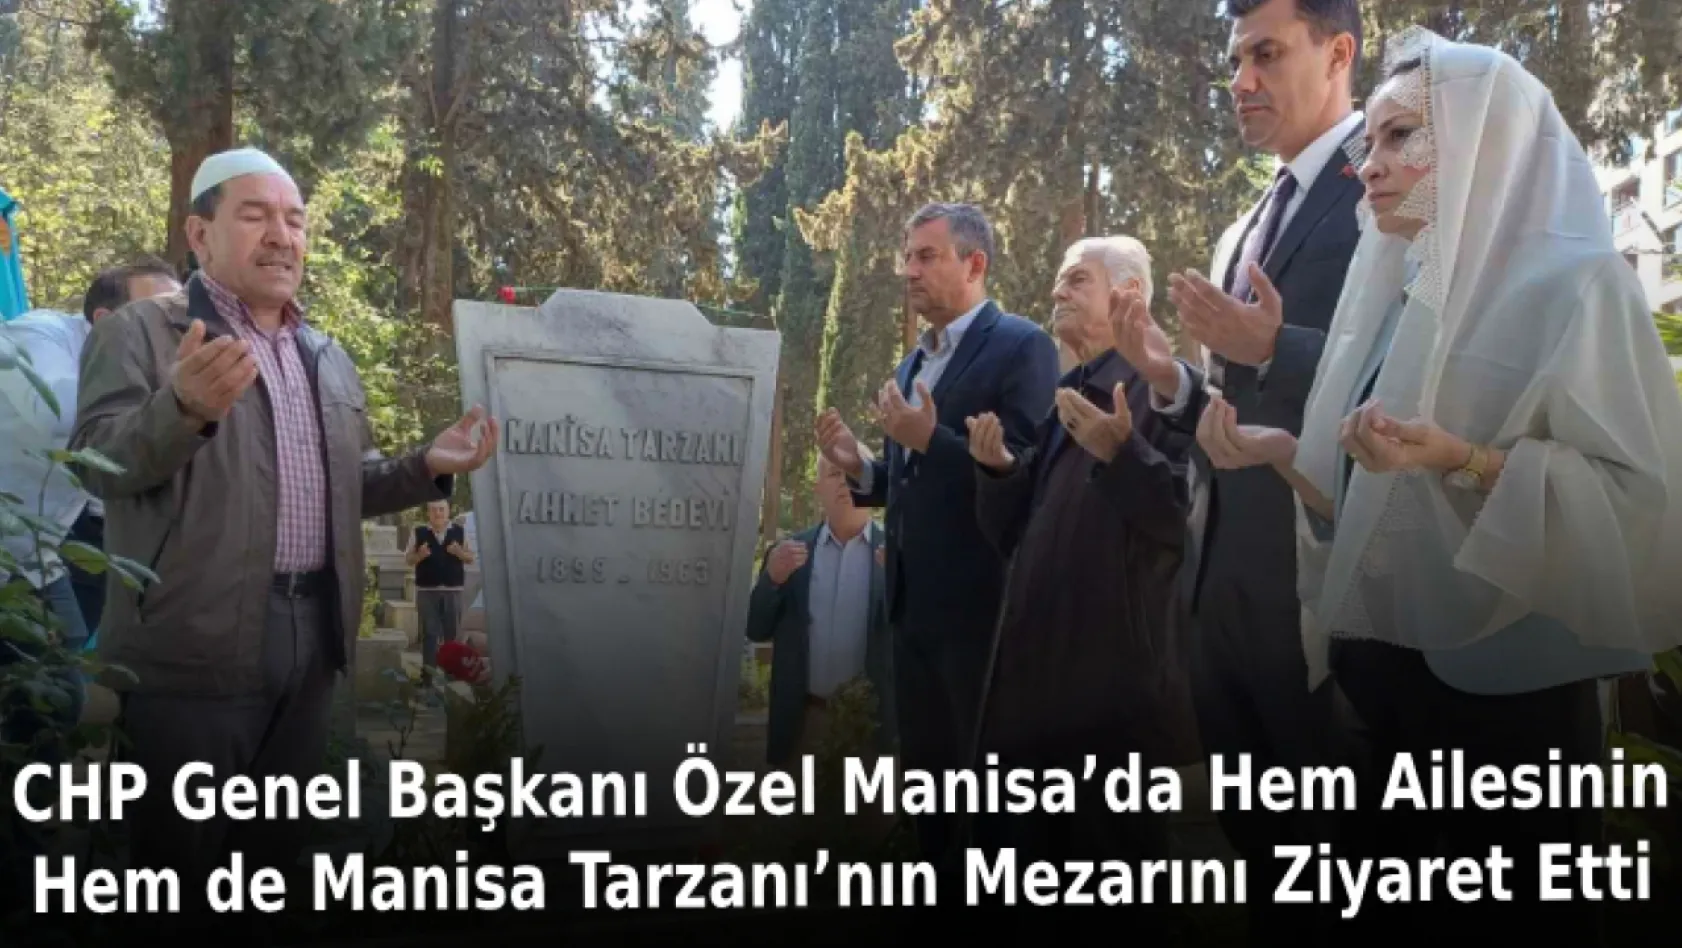 CHP Genel Başkanı Özel Manisa'da hem ailesinin hem de Manisa Tarzanı'nın mezarını ziyaret etti